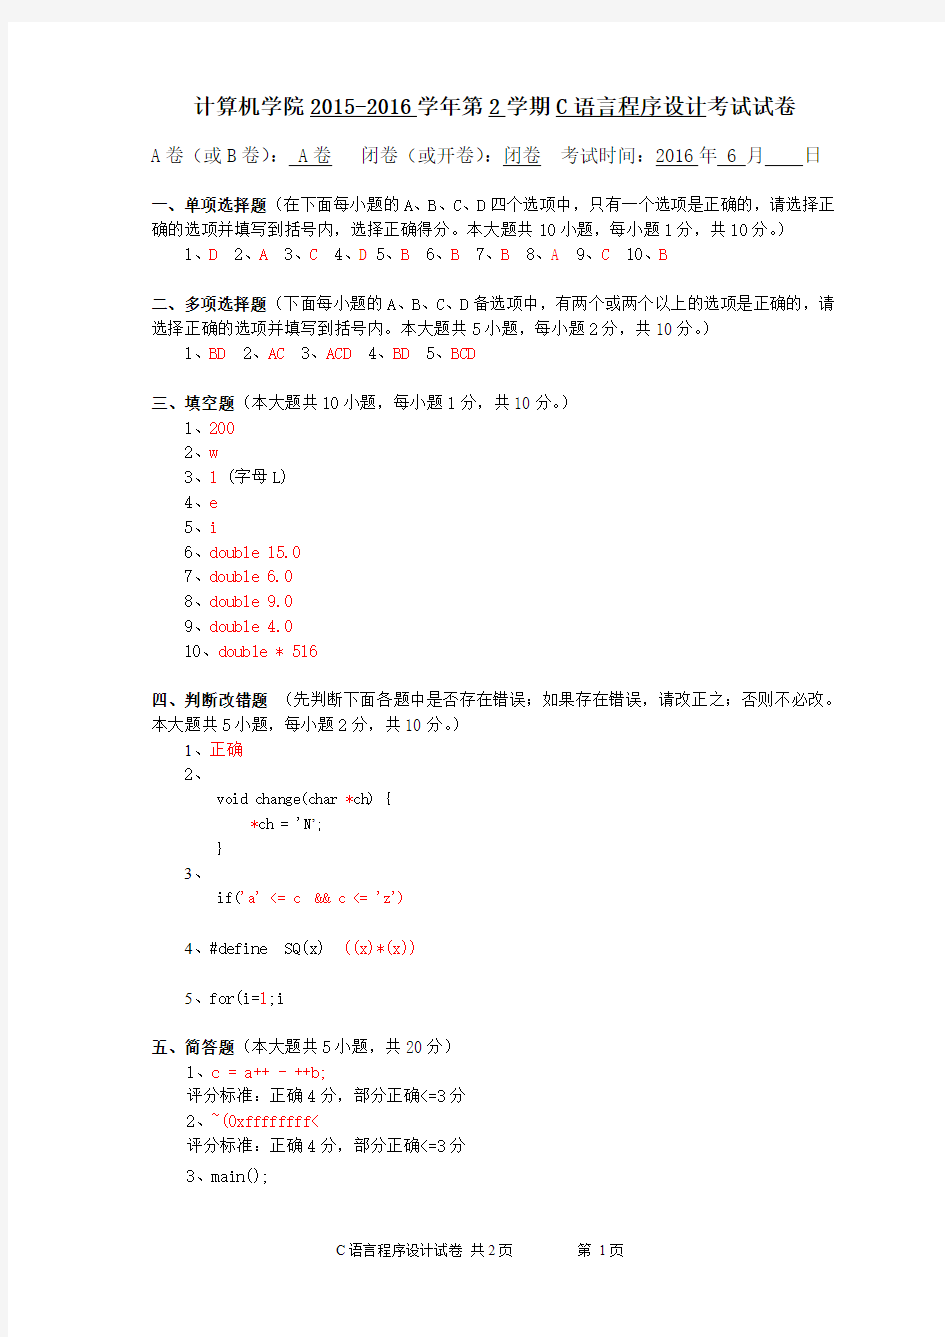 华中科技大学计算机学院2016年C语言程序设计试卷-参考答案及评卷标准